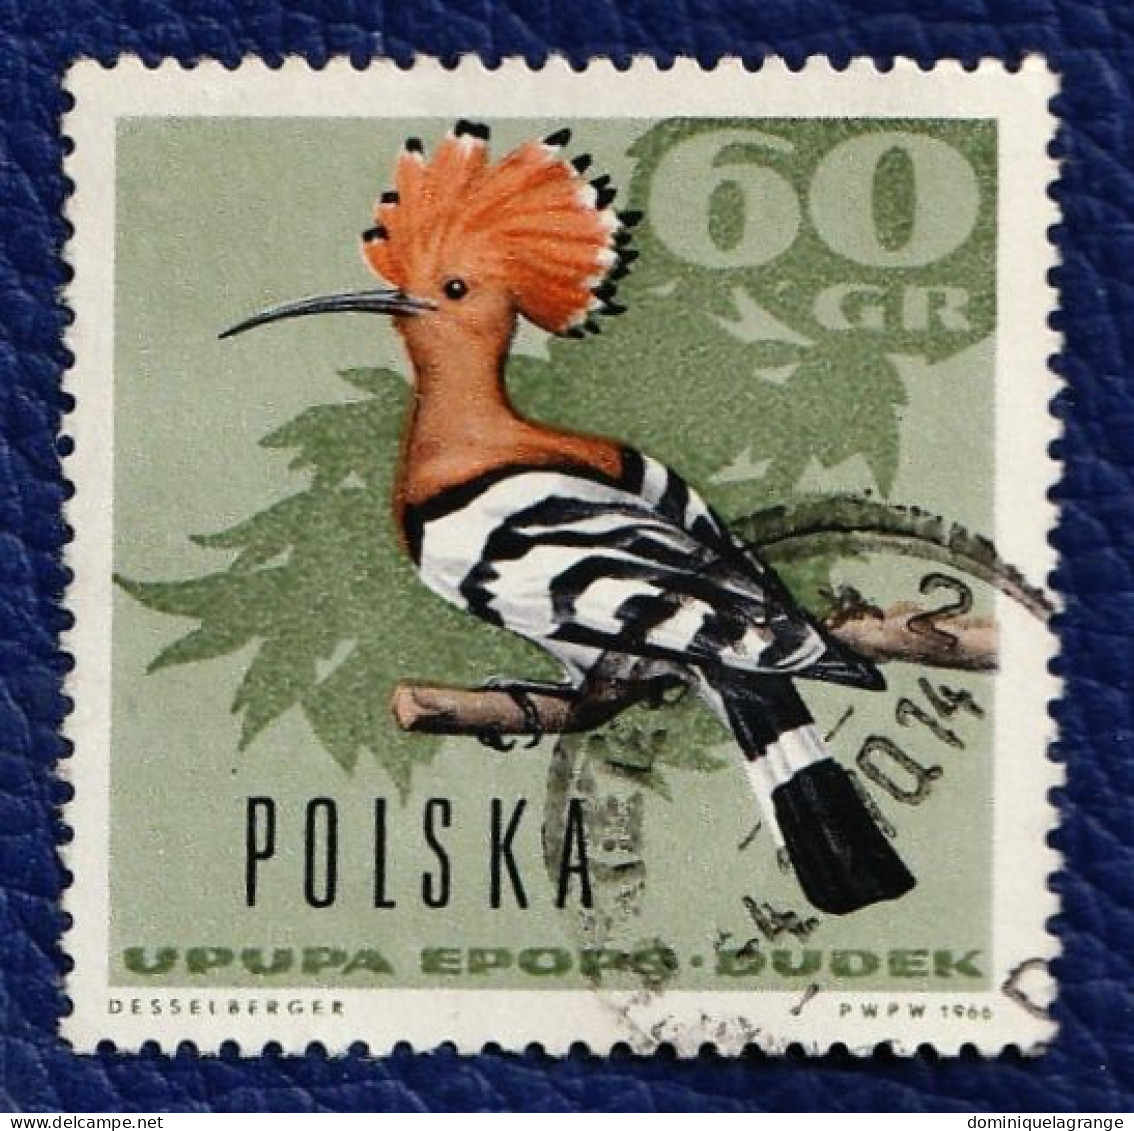 9 timbres de Pologne "animaux" de 1964 à 1972